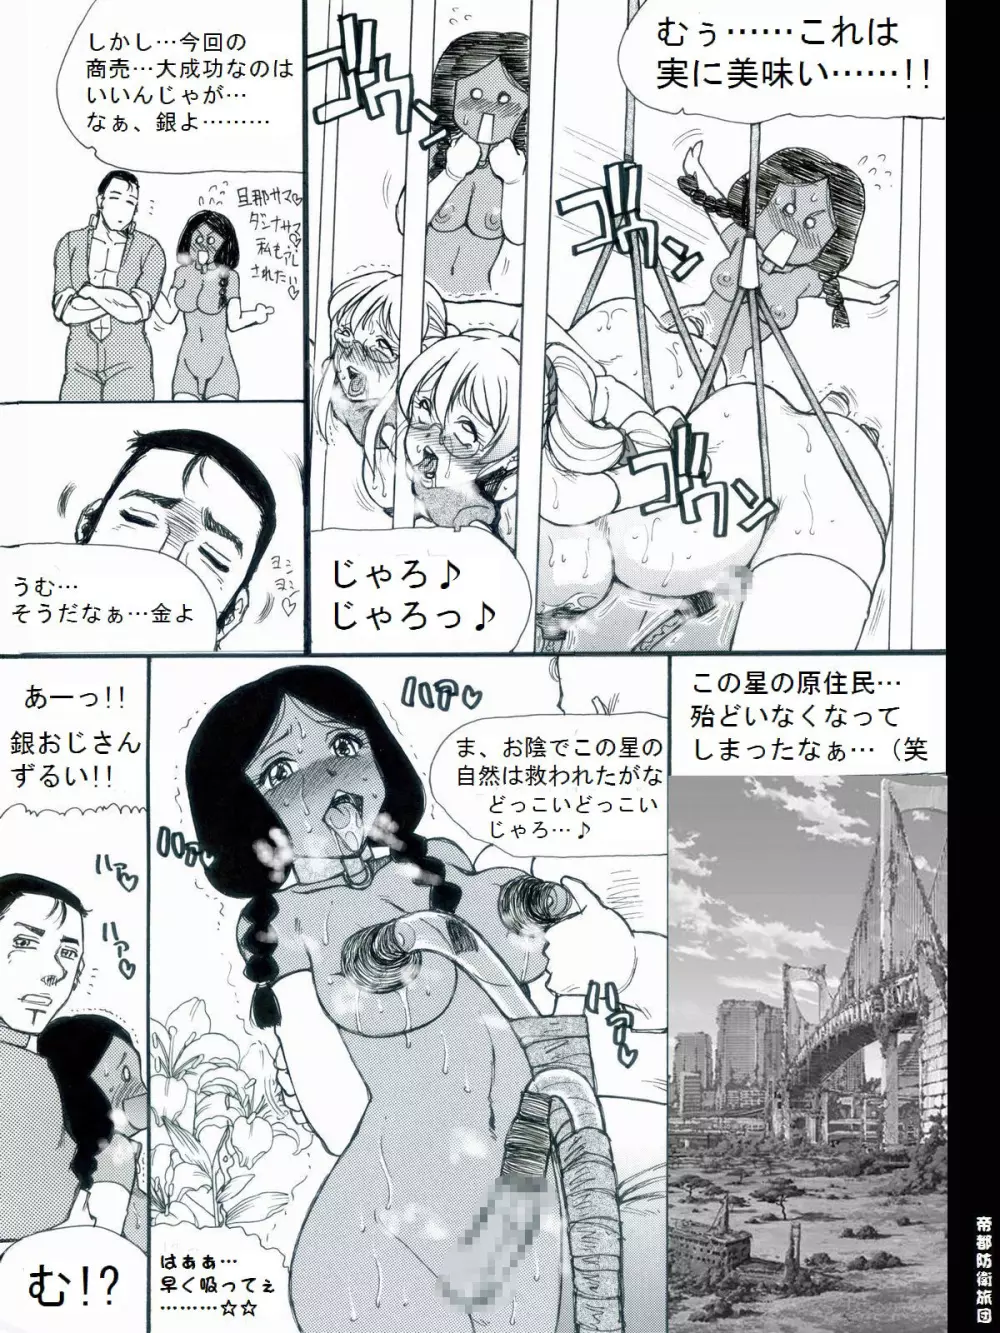 [帝都防衛旅団] RTKBOOK 9-3 「M○Xいぢり(3) 『PANPAN-MAN』」 21ページ